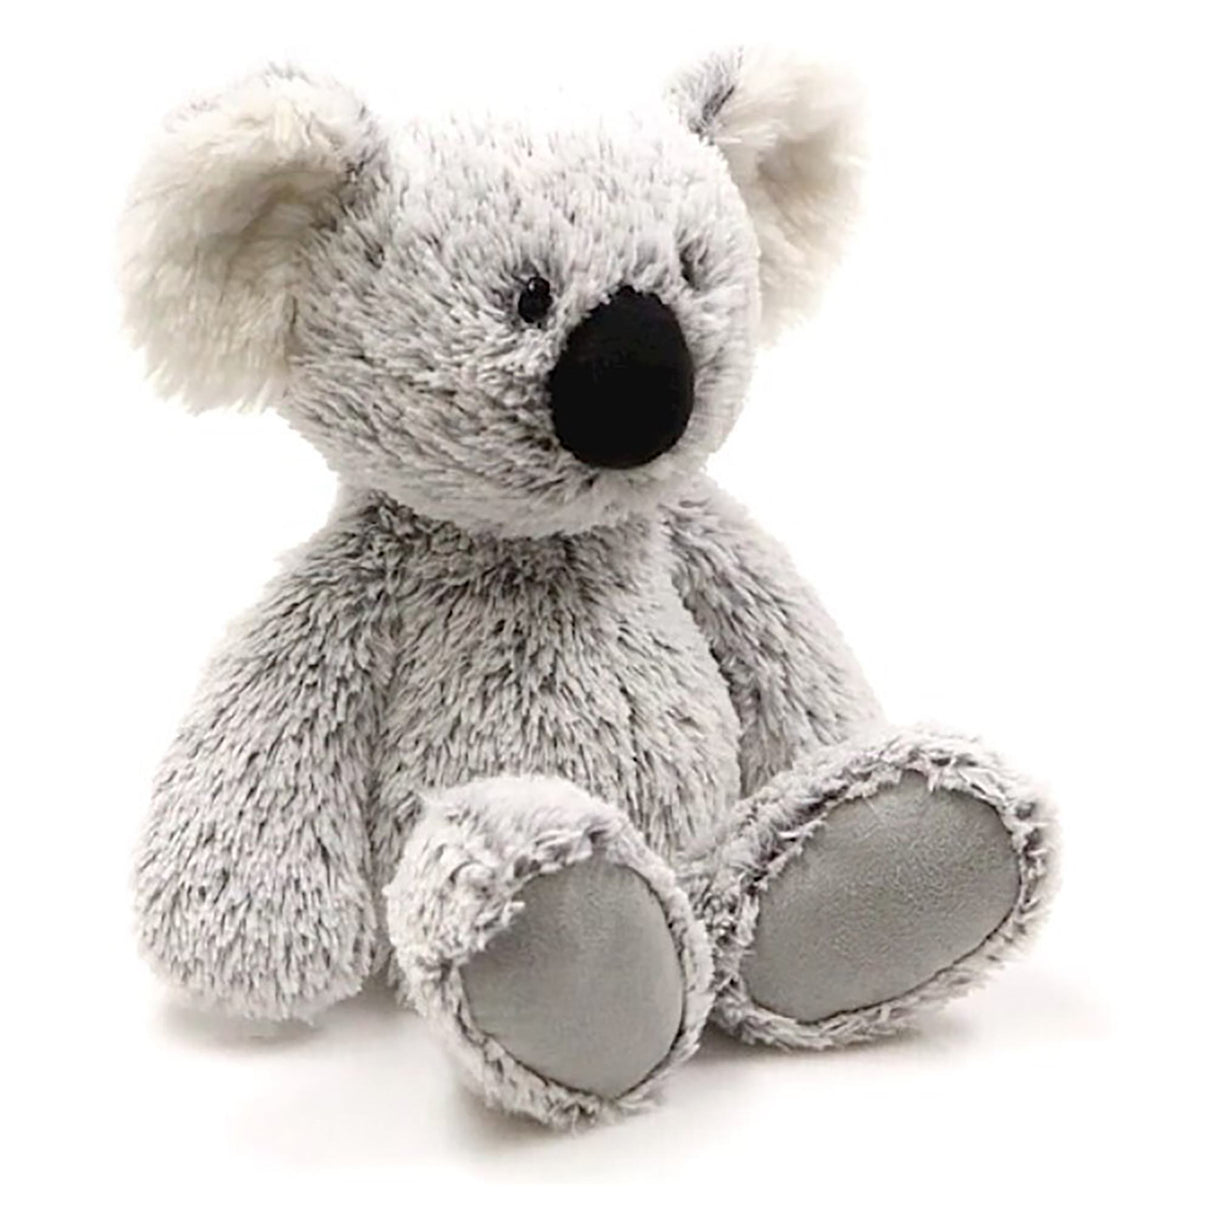 Gund Koala William Plush Toy (38 cms)